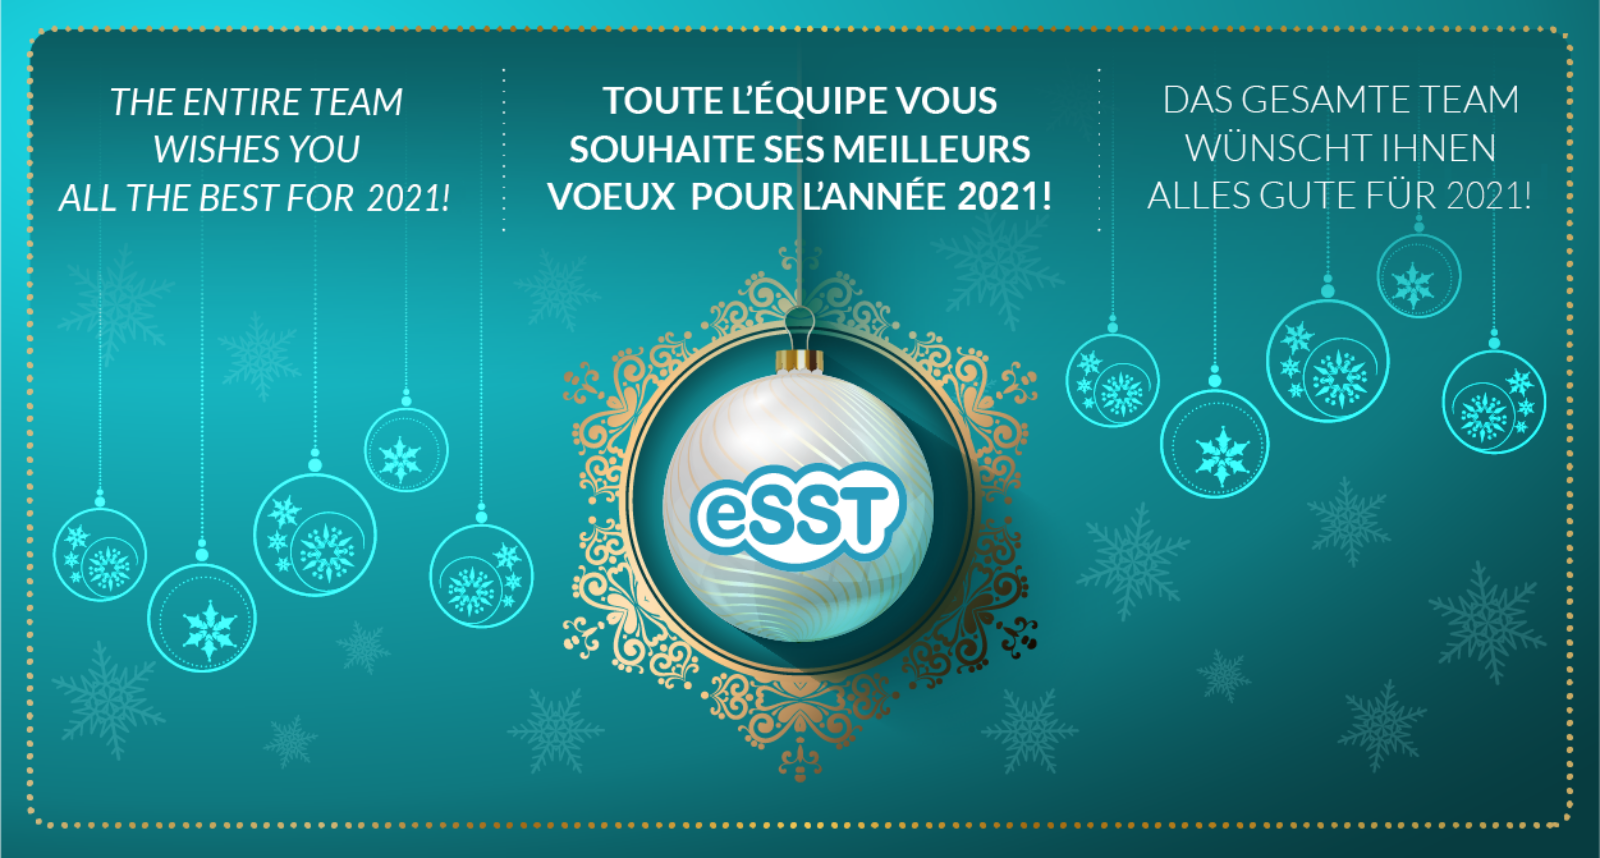 Best wishes 2021 on behalf of the eSST team